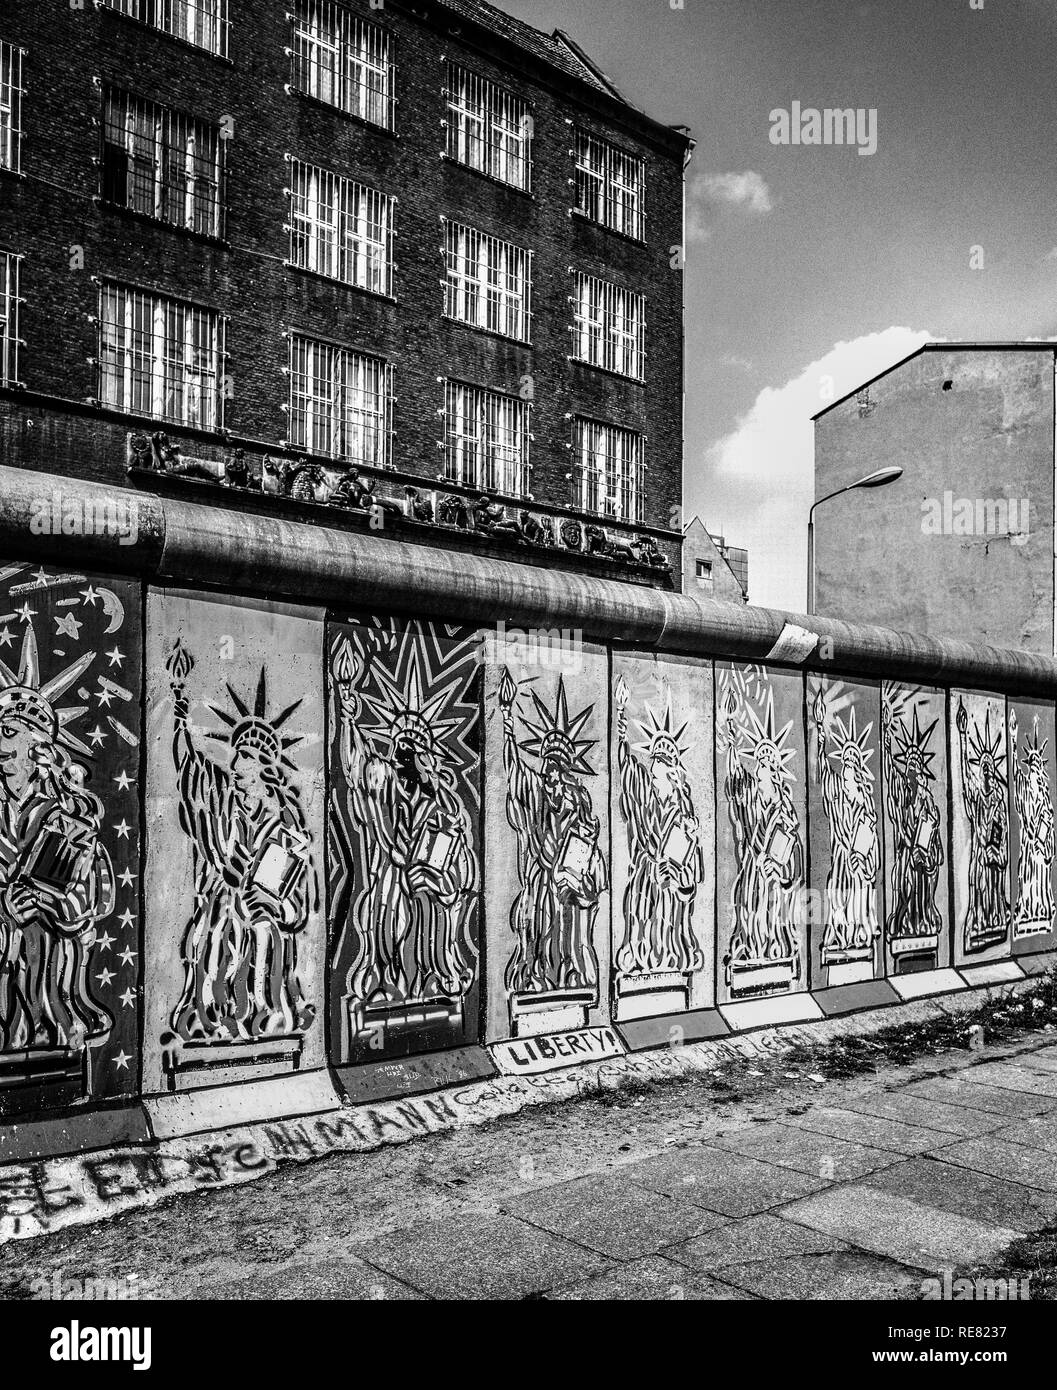 Août 1986, Mur de Berlin, la Statue de la liberté fresques, côté ouest, l'Est de Berlin, bâtiments, rue Zimmerstrasse Berlin Ouest, l'Allemagne, l'Europe, Banque D'Images